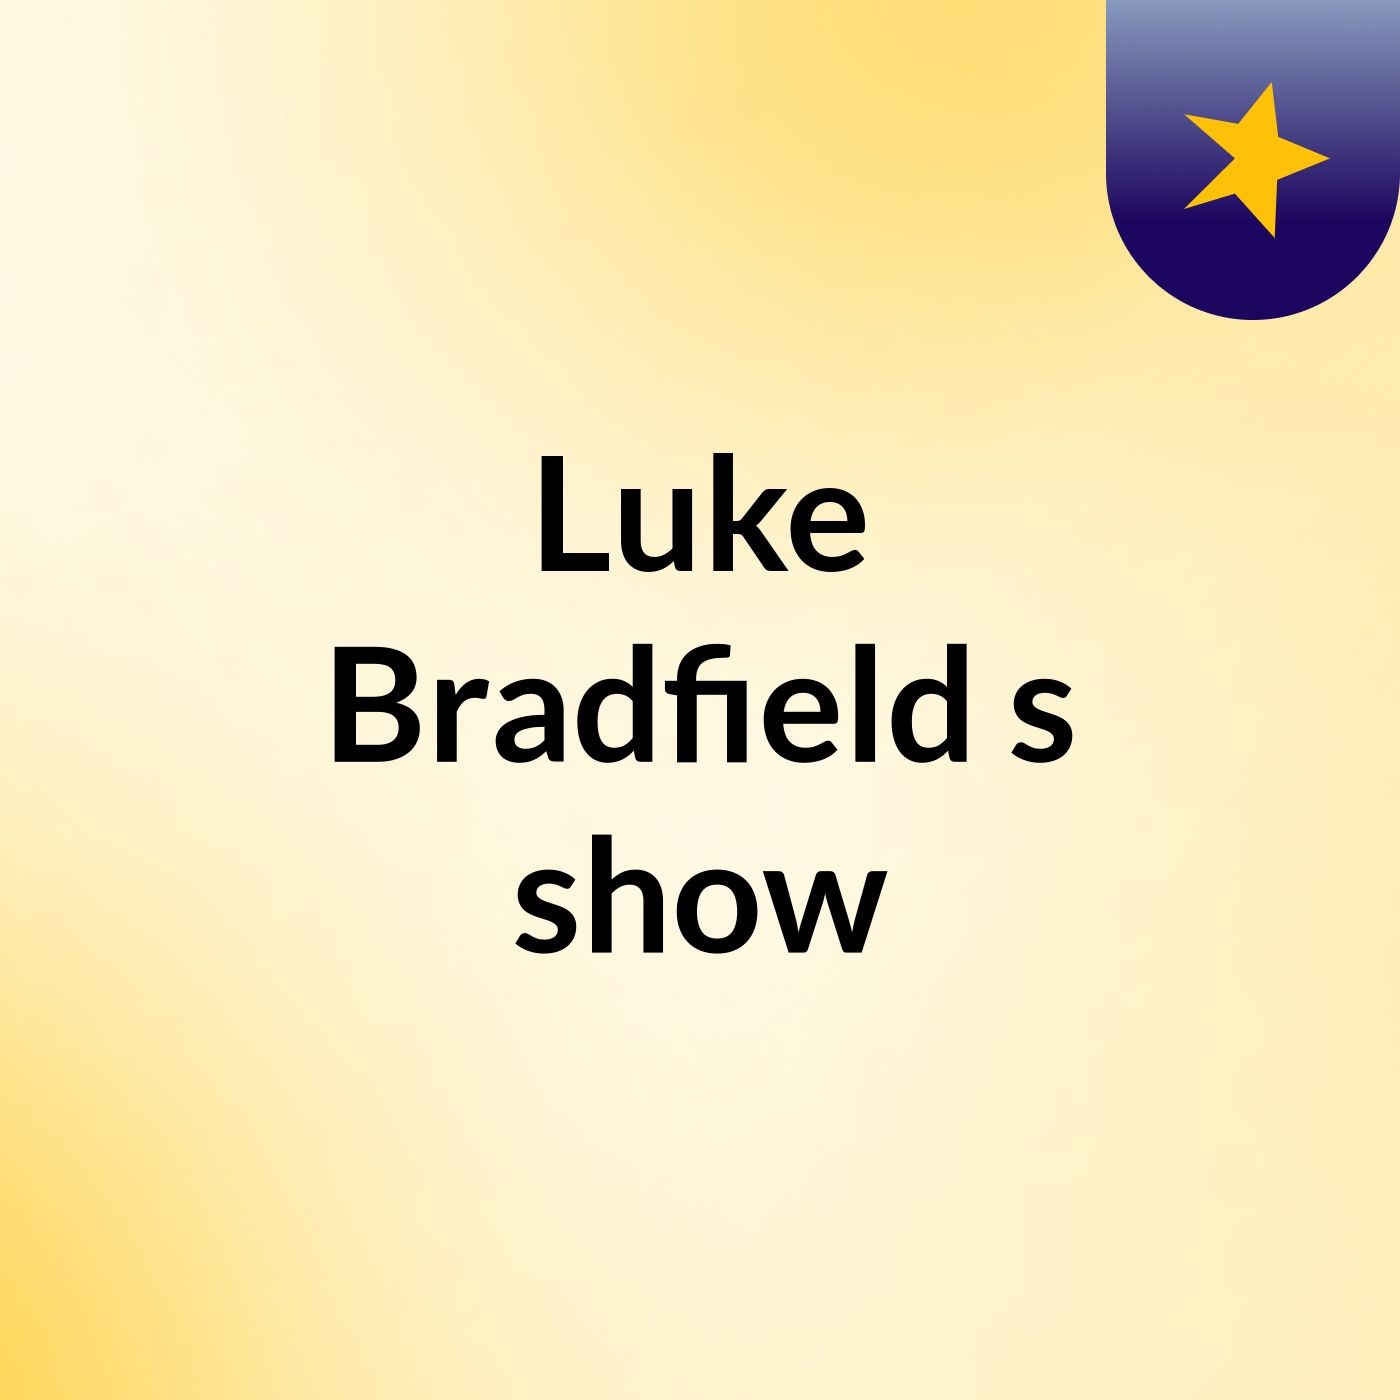 Luke Bradfield's show